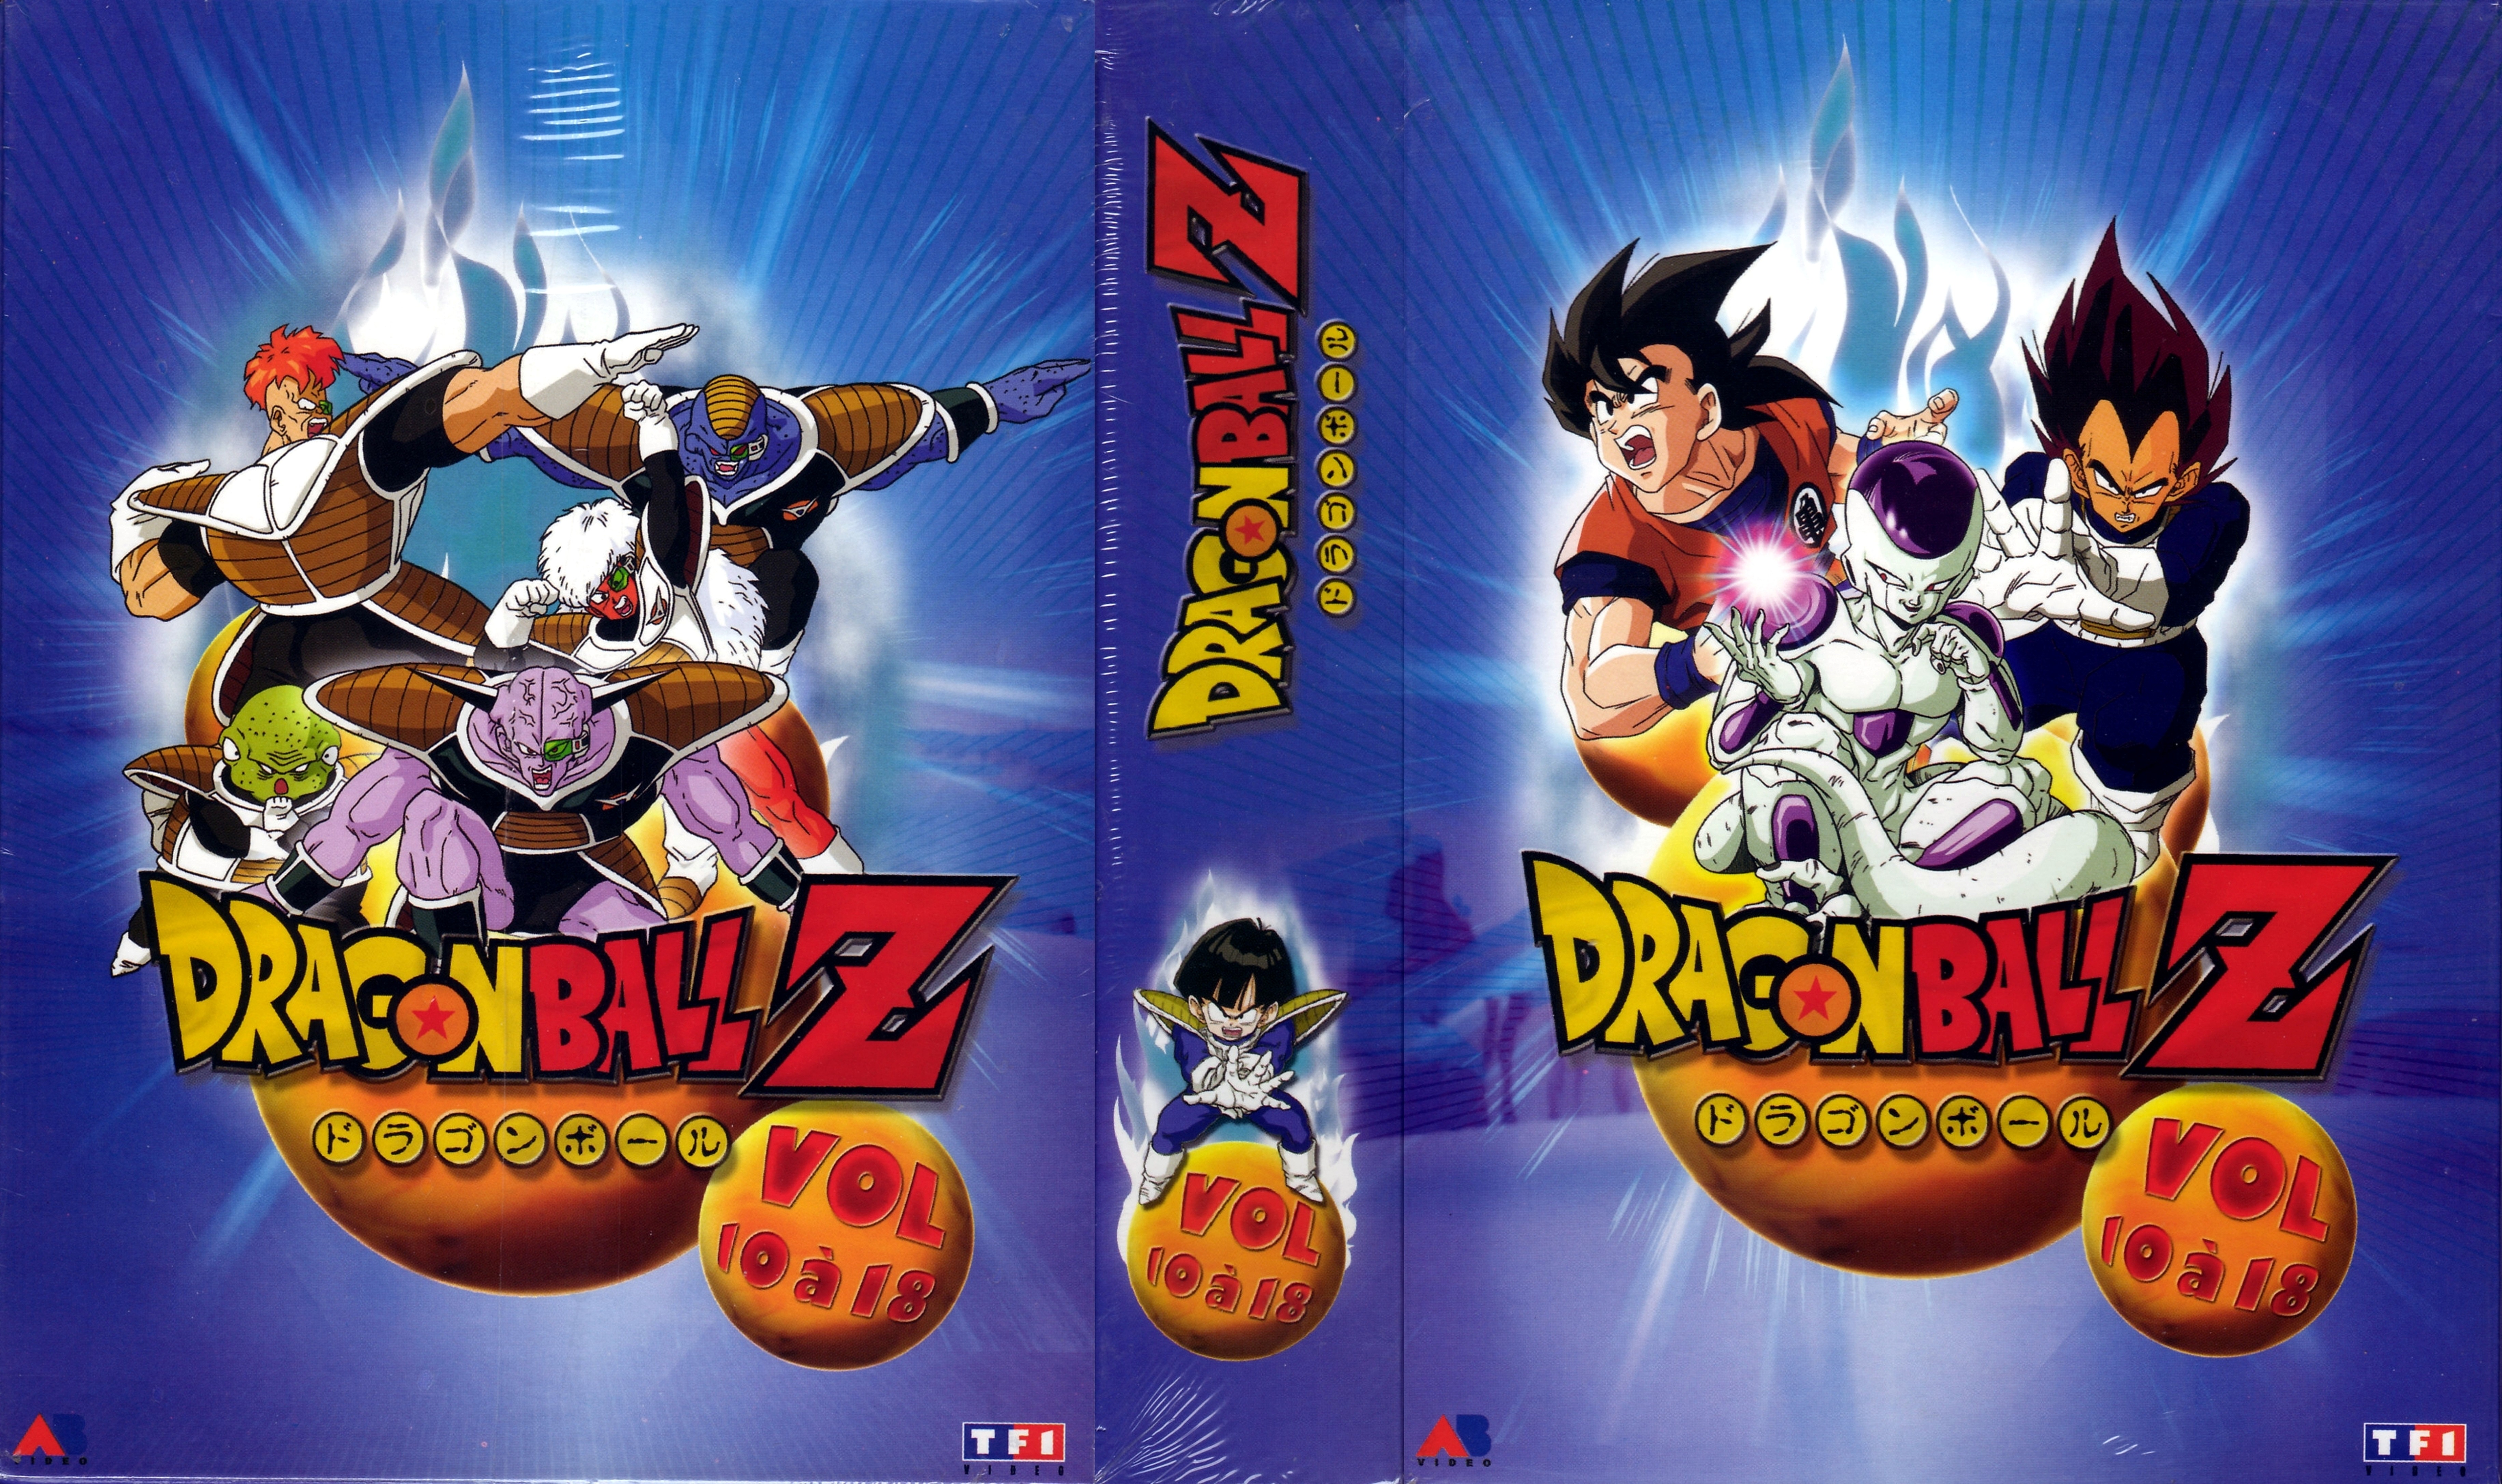 Jaquette DVD Dragon ball Z vol 10 a 18 COFFRET